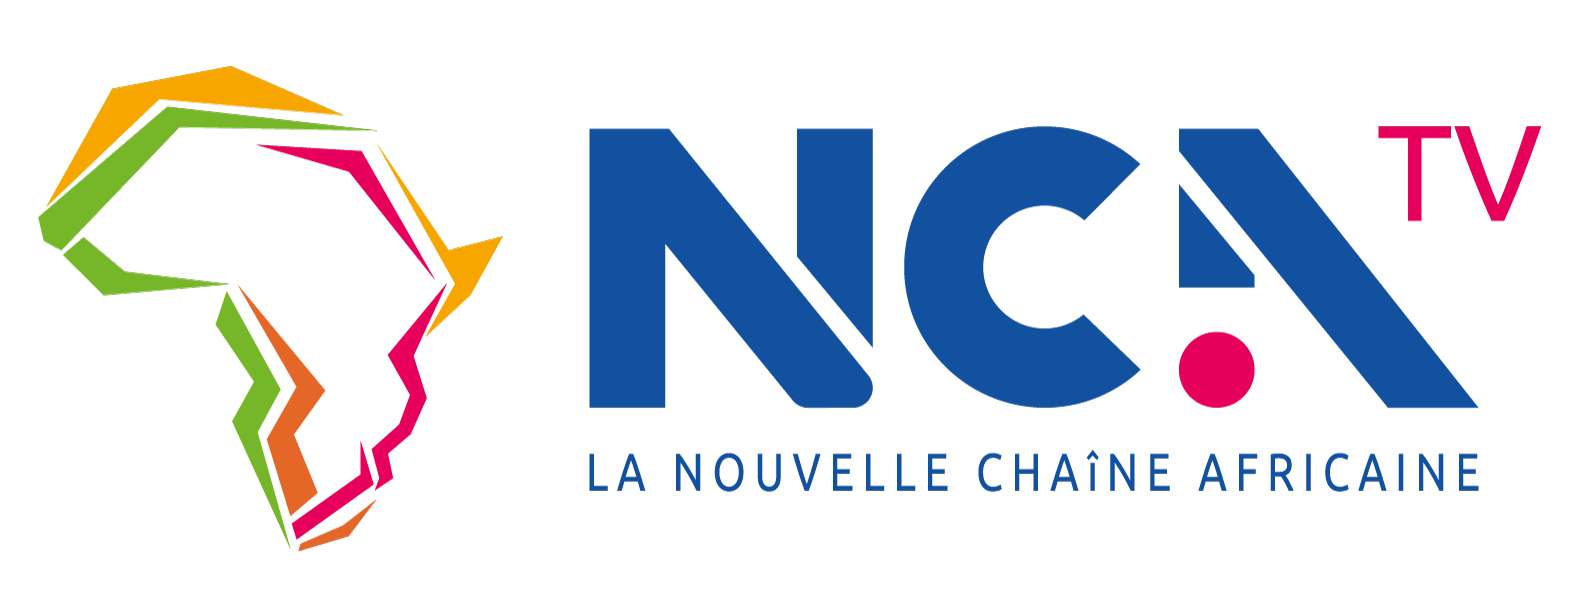 NCA-TV